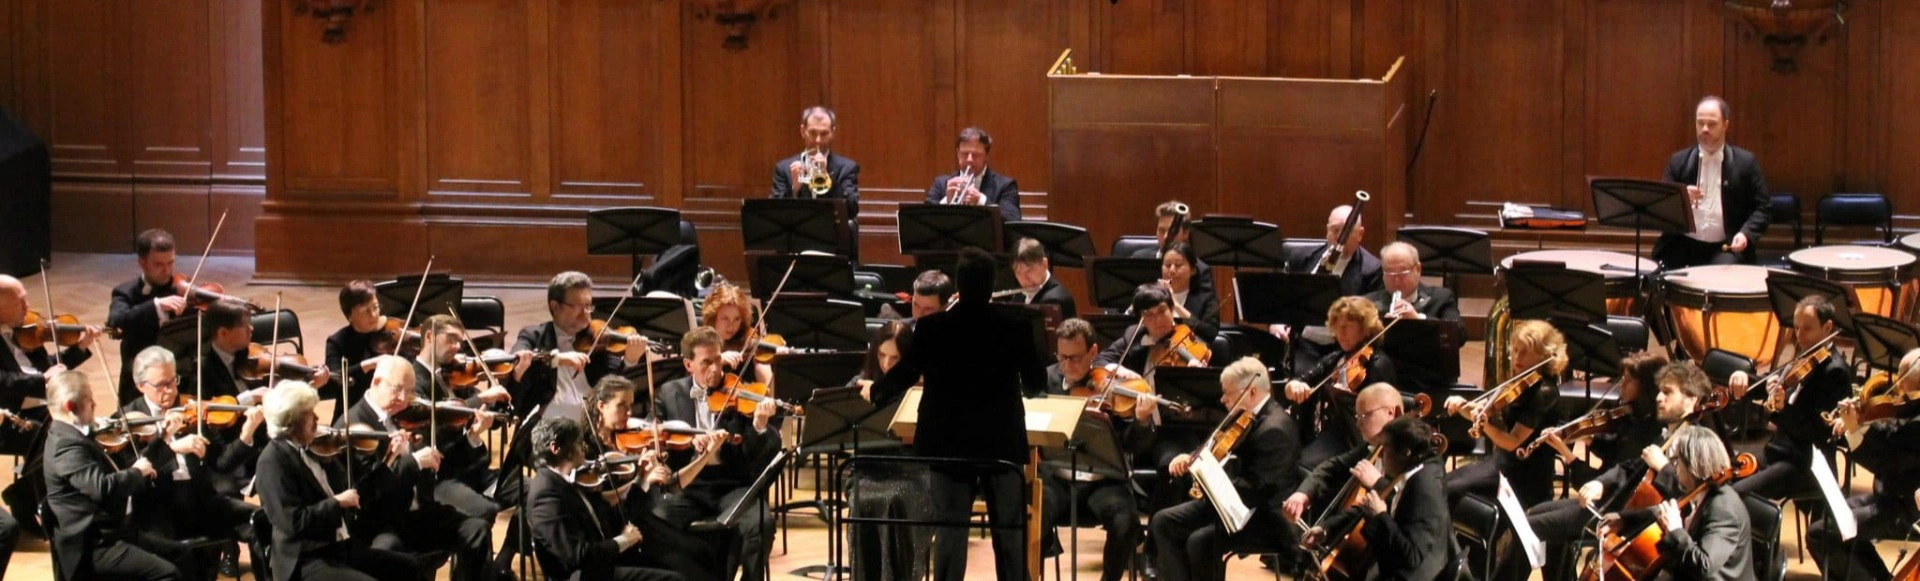 Симфонический оркестр Московской консерватории
